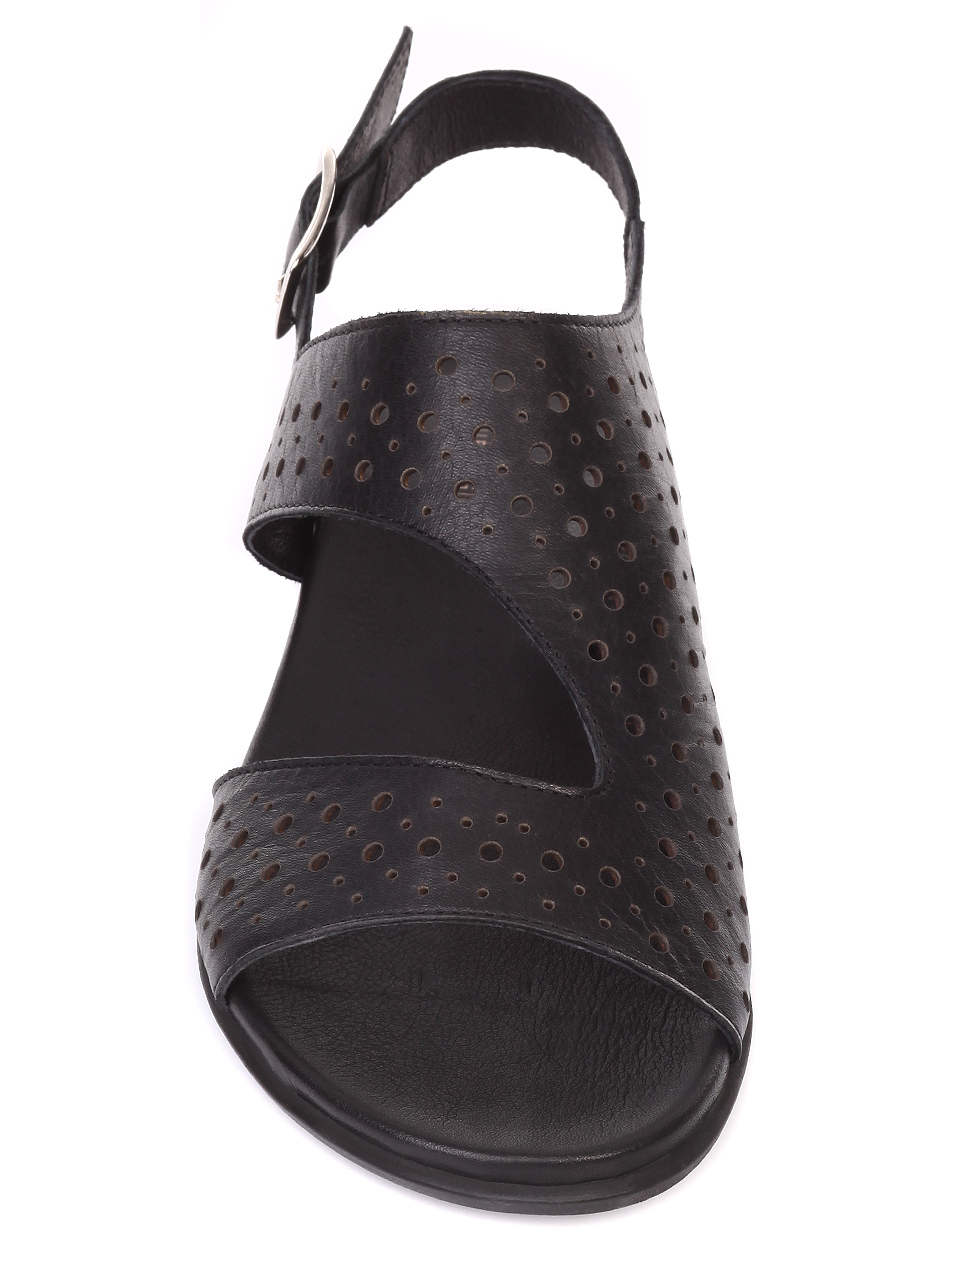 Ежедневни дамски сандали от естествена кожа 4AB-19482 black